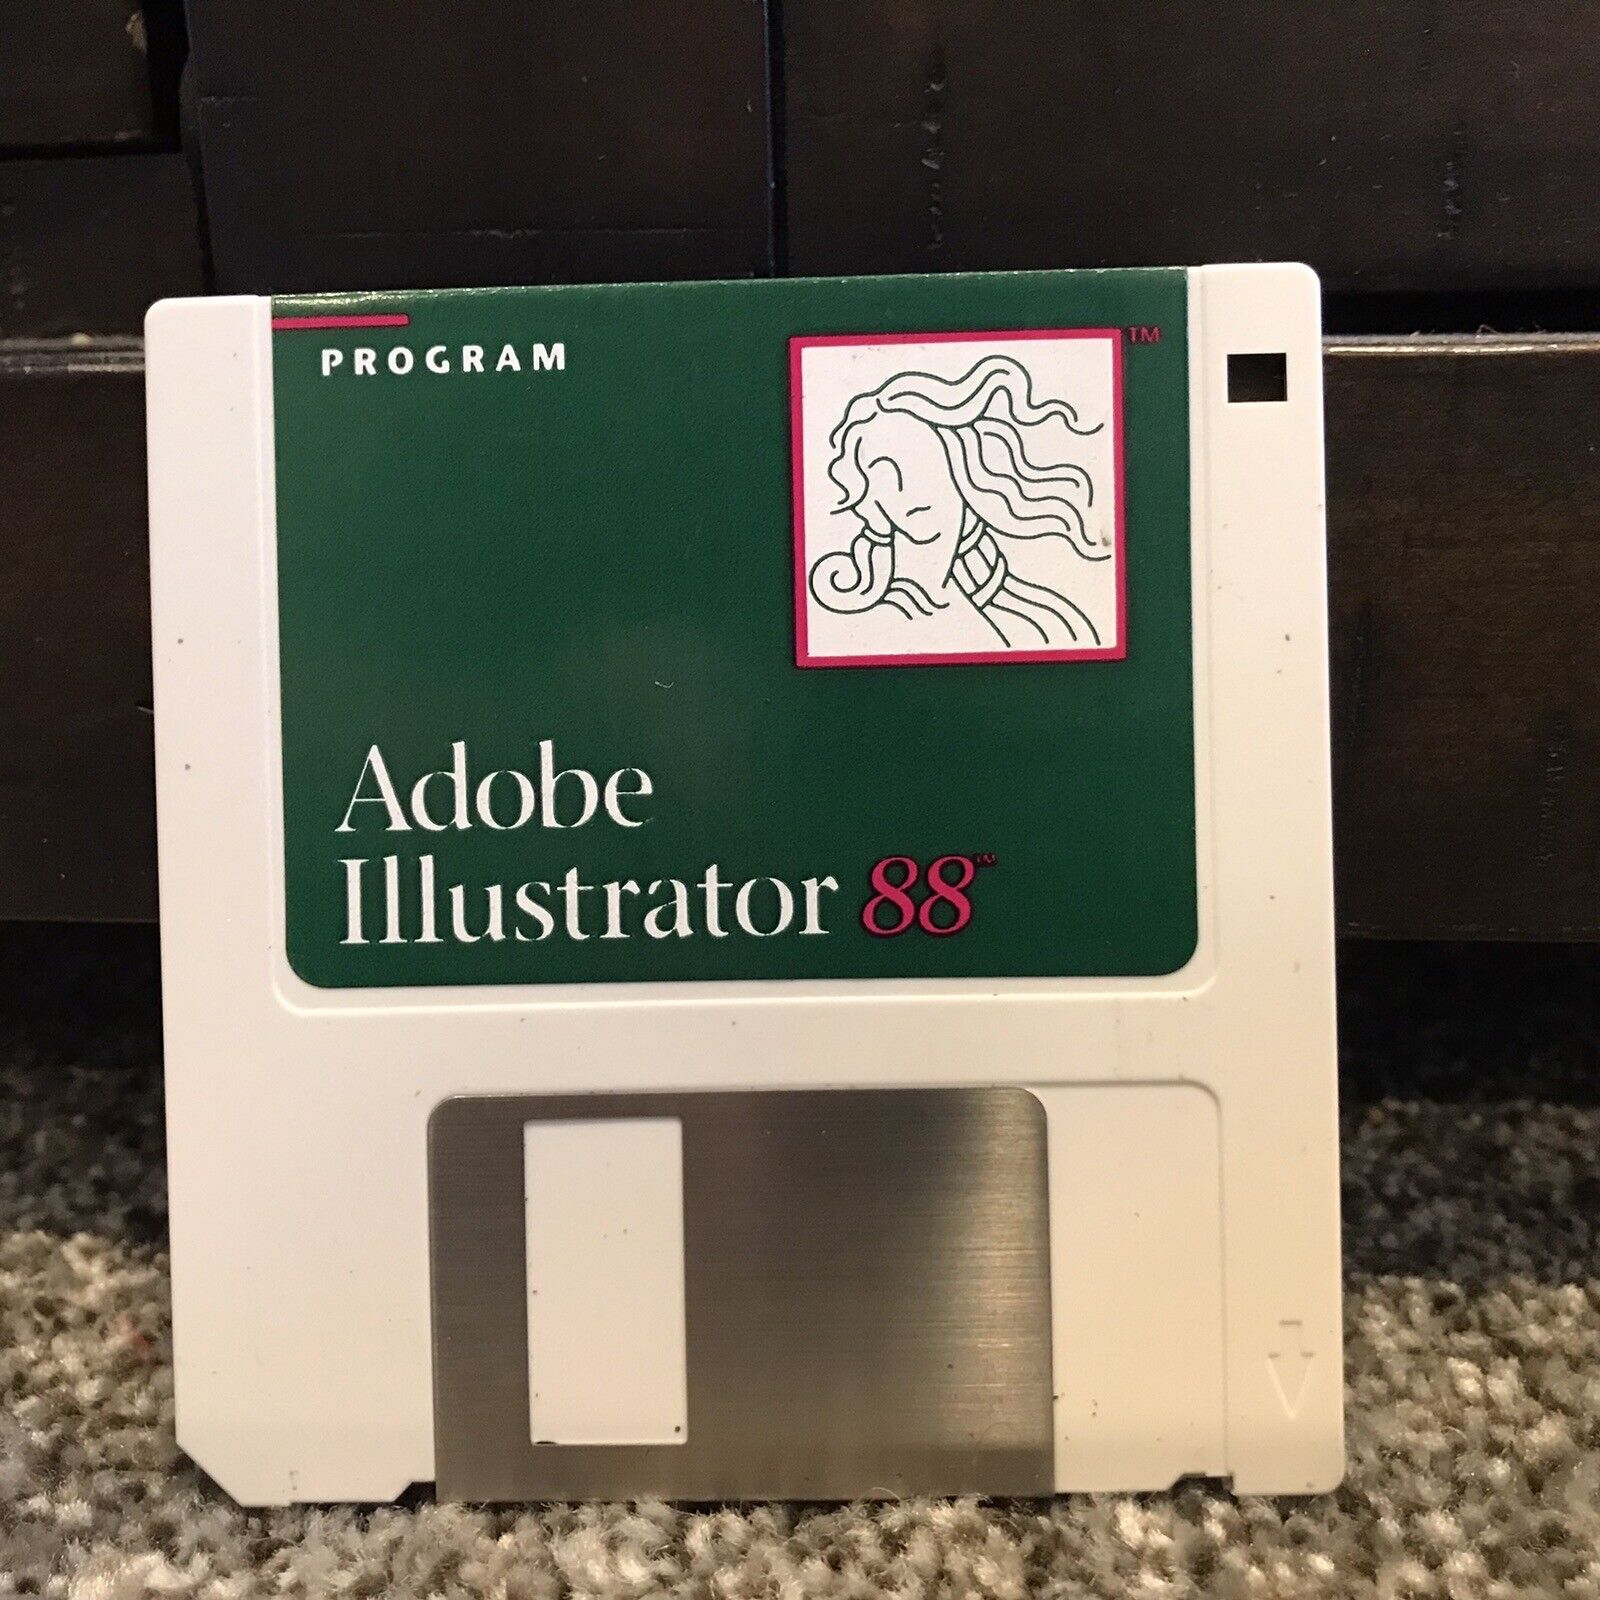 Adobe Illustrator 88 - Macintosh Floppy Disk 3.5 1988